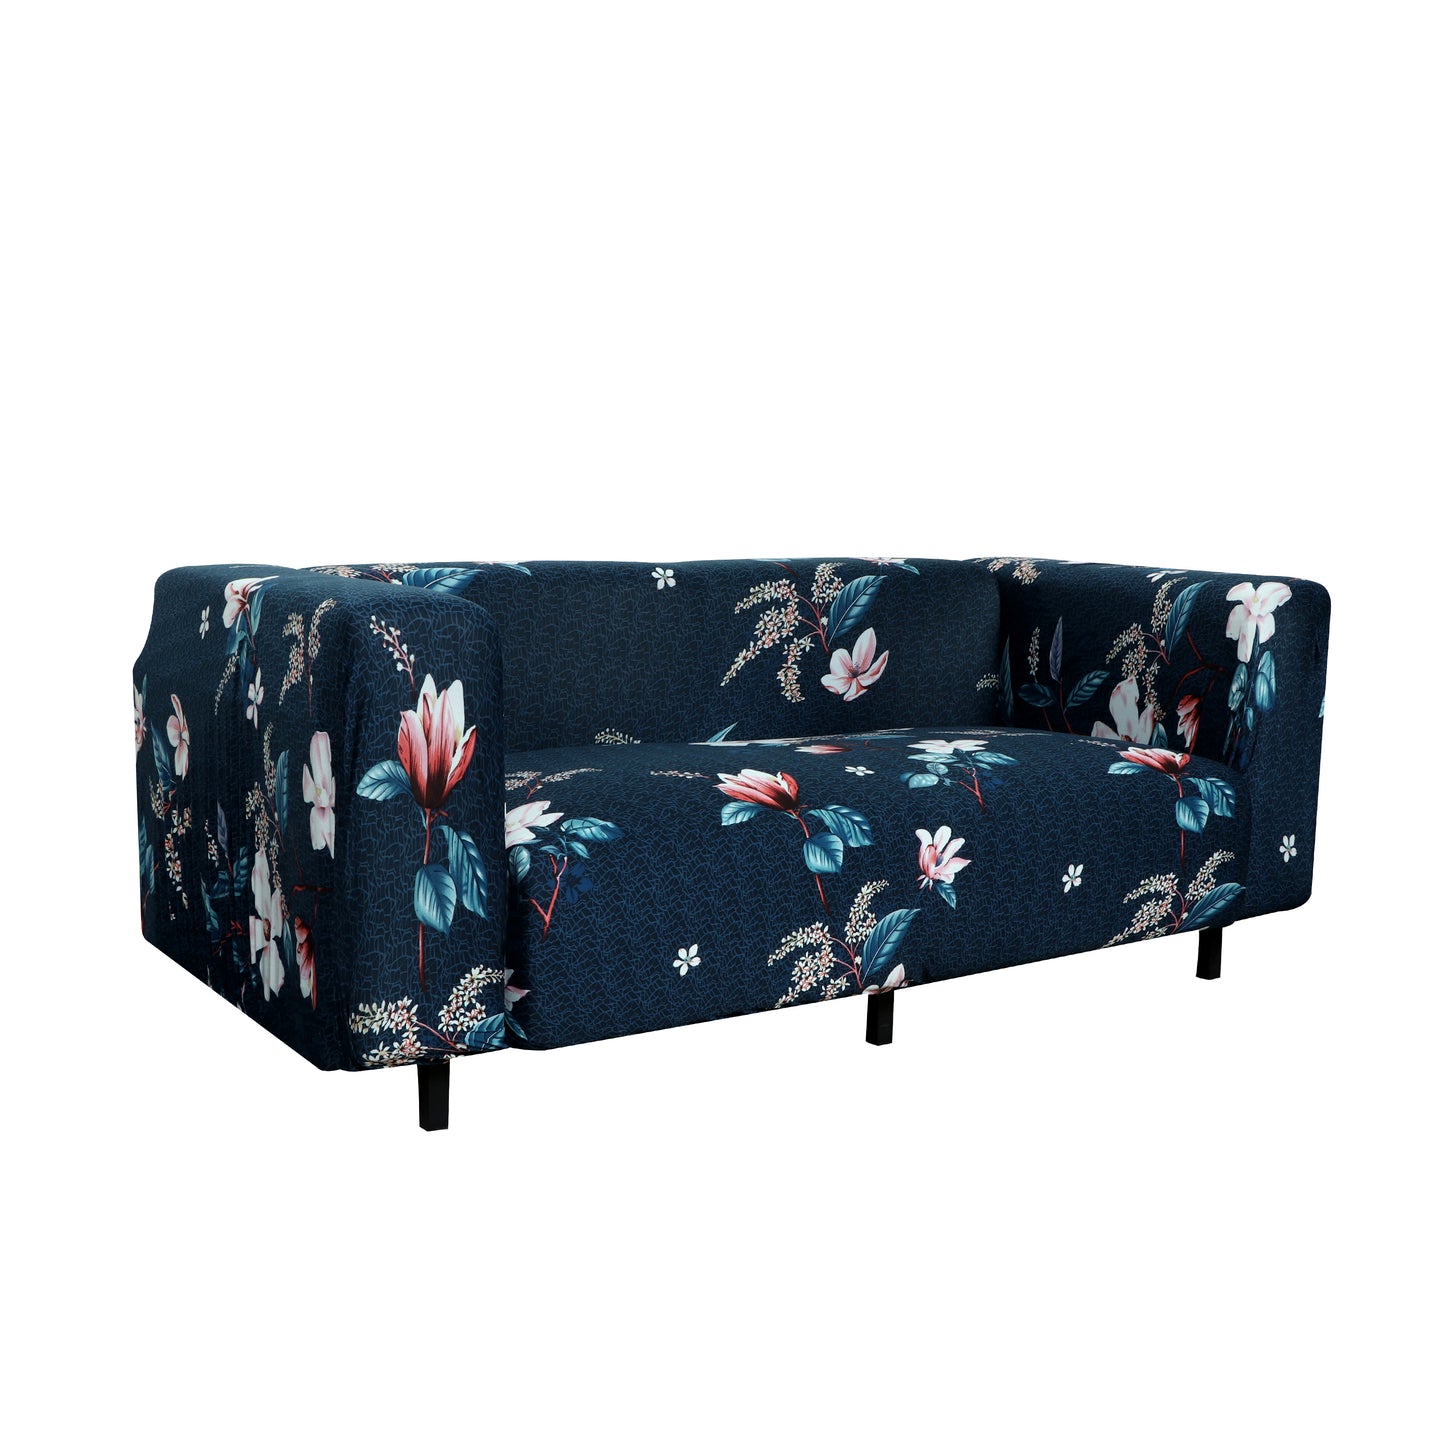 Printed Sofa Cover - Dark Blue Lotus